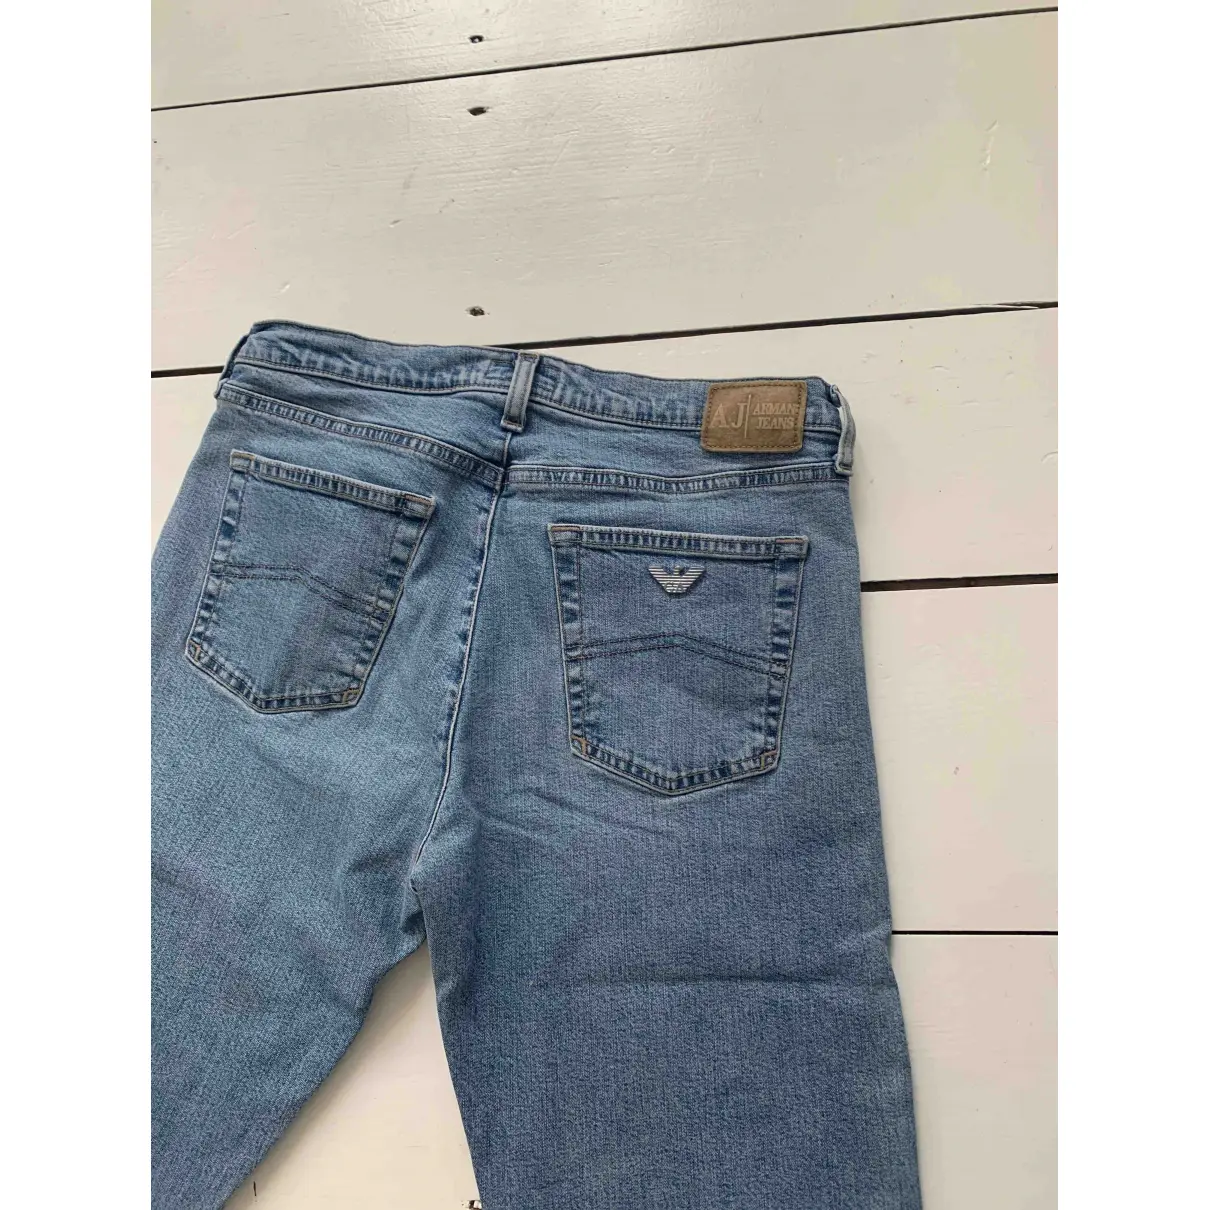 Straight pants Armani Jeans - Vintage